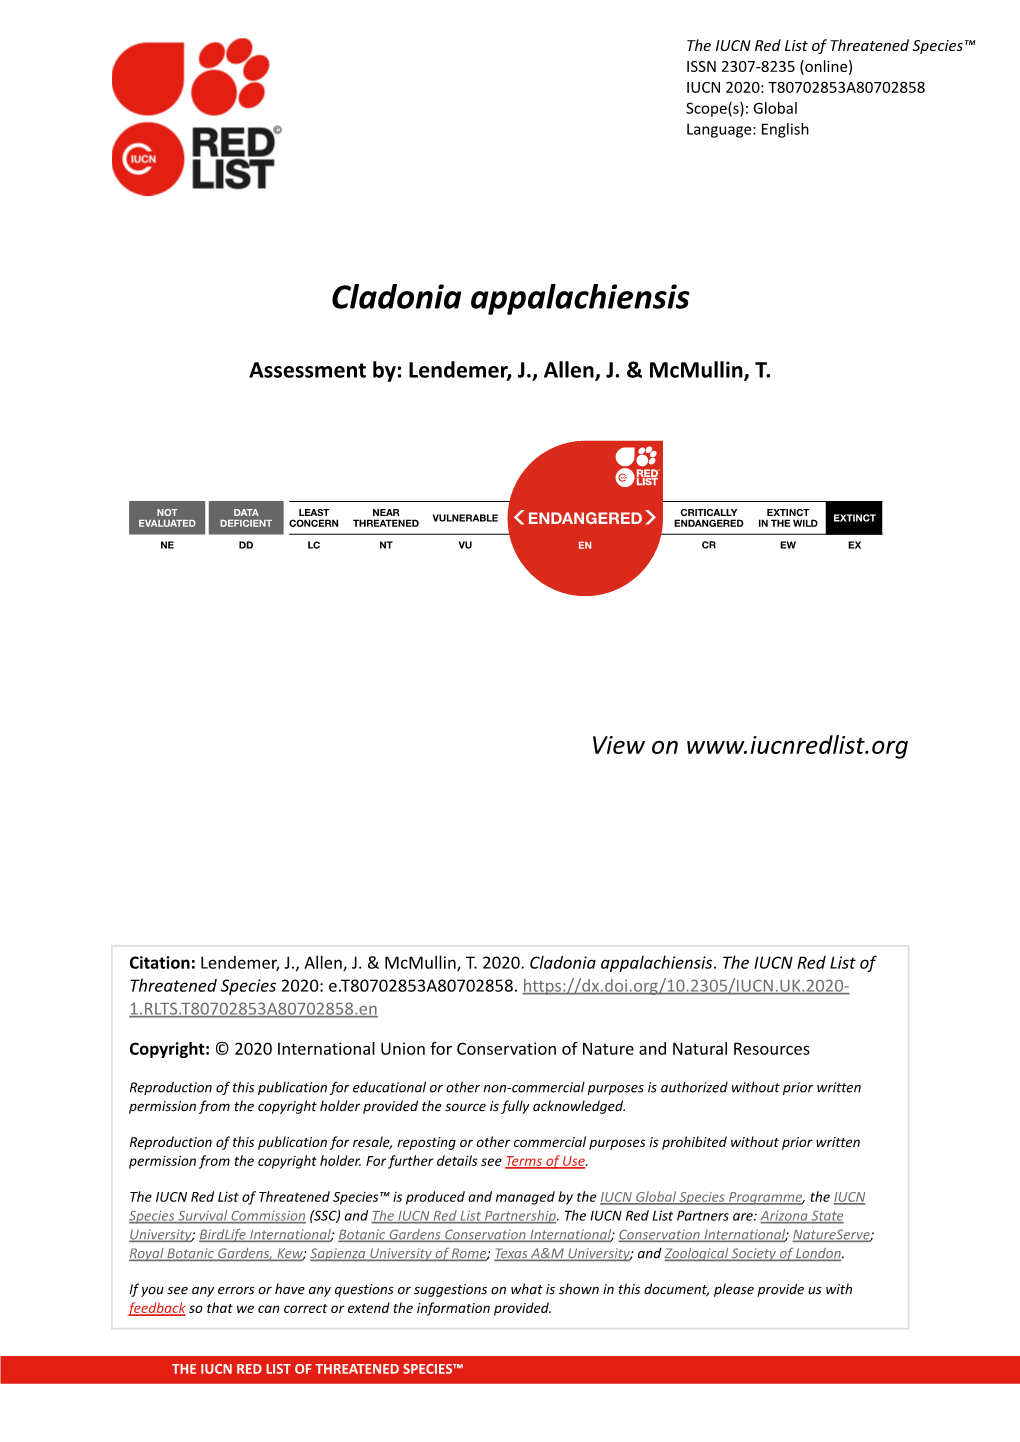 Cladonia Appalachiensis